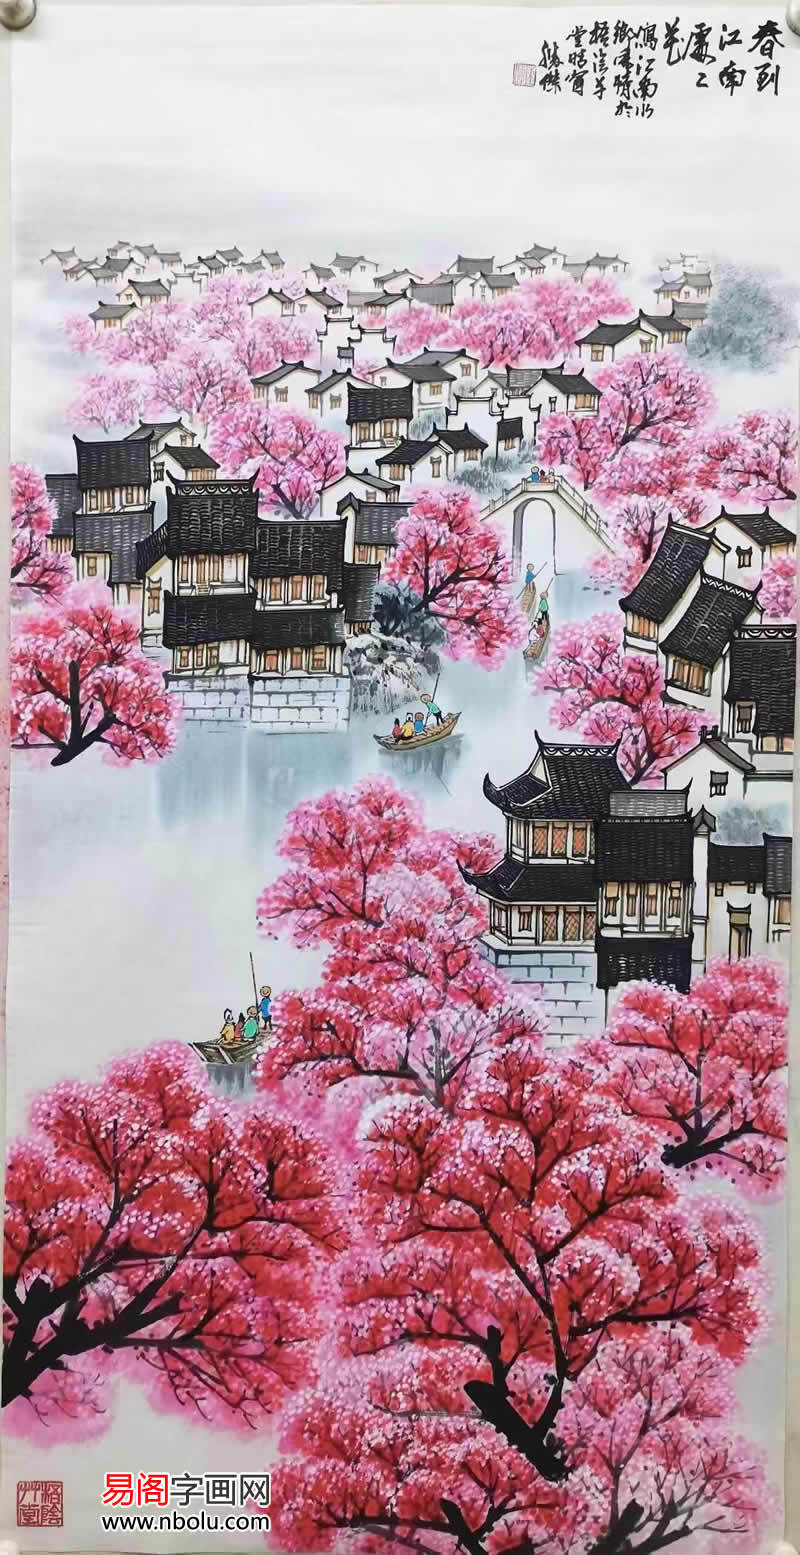 陈胜杰的山水画作品,题材多为江南的三月,远山如黛,云烟缥缈,桃花流水